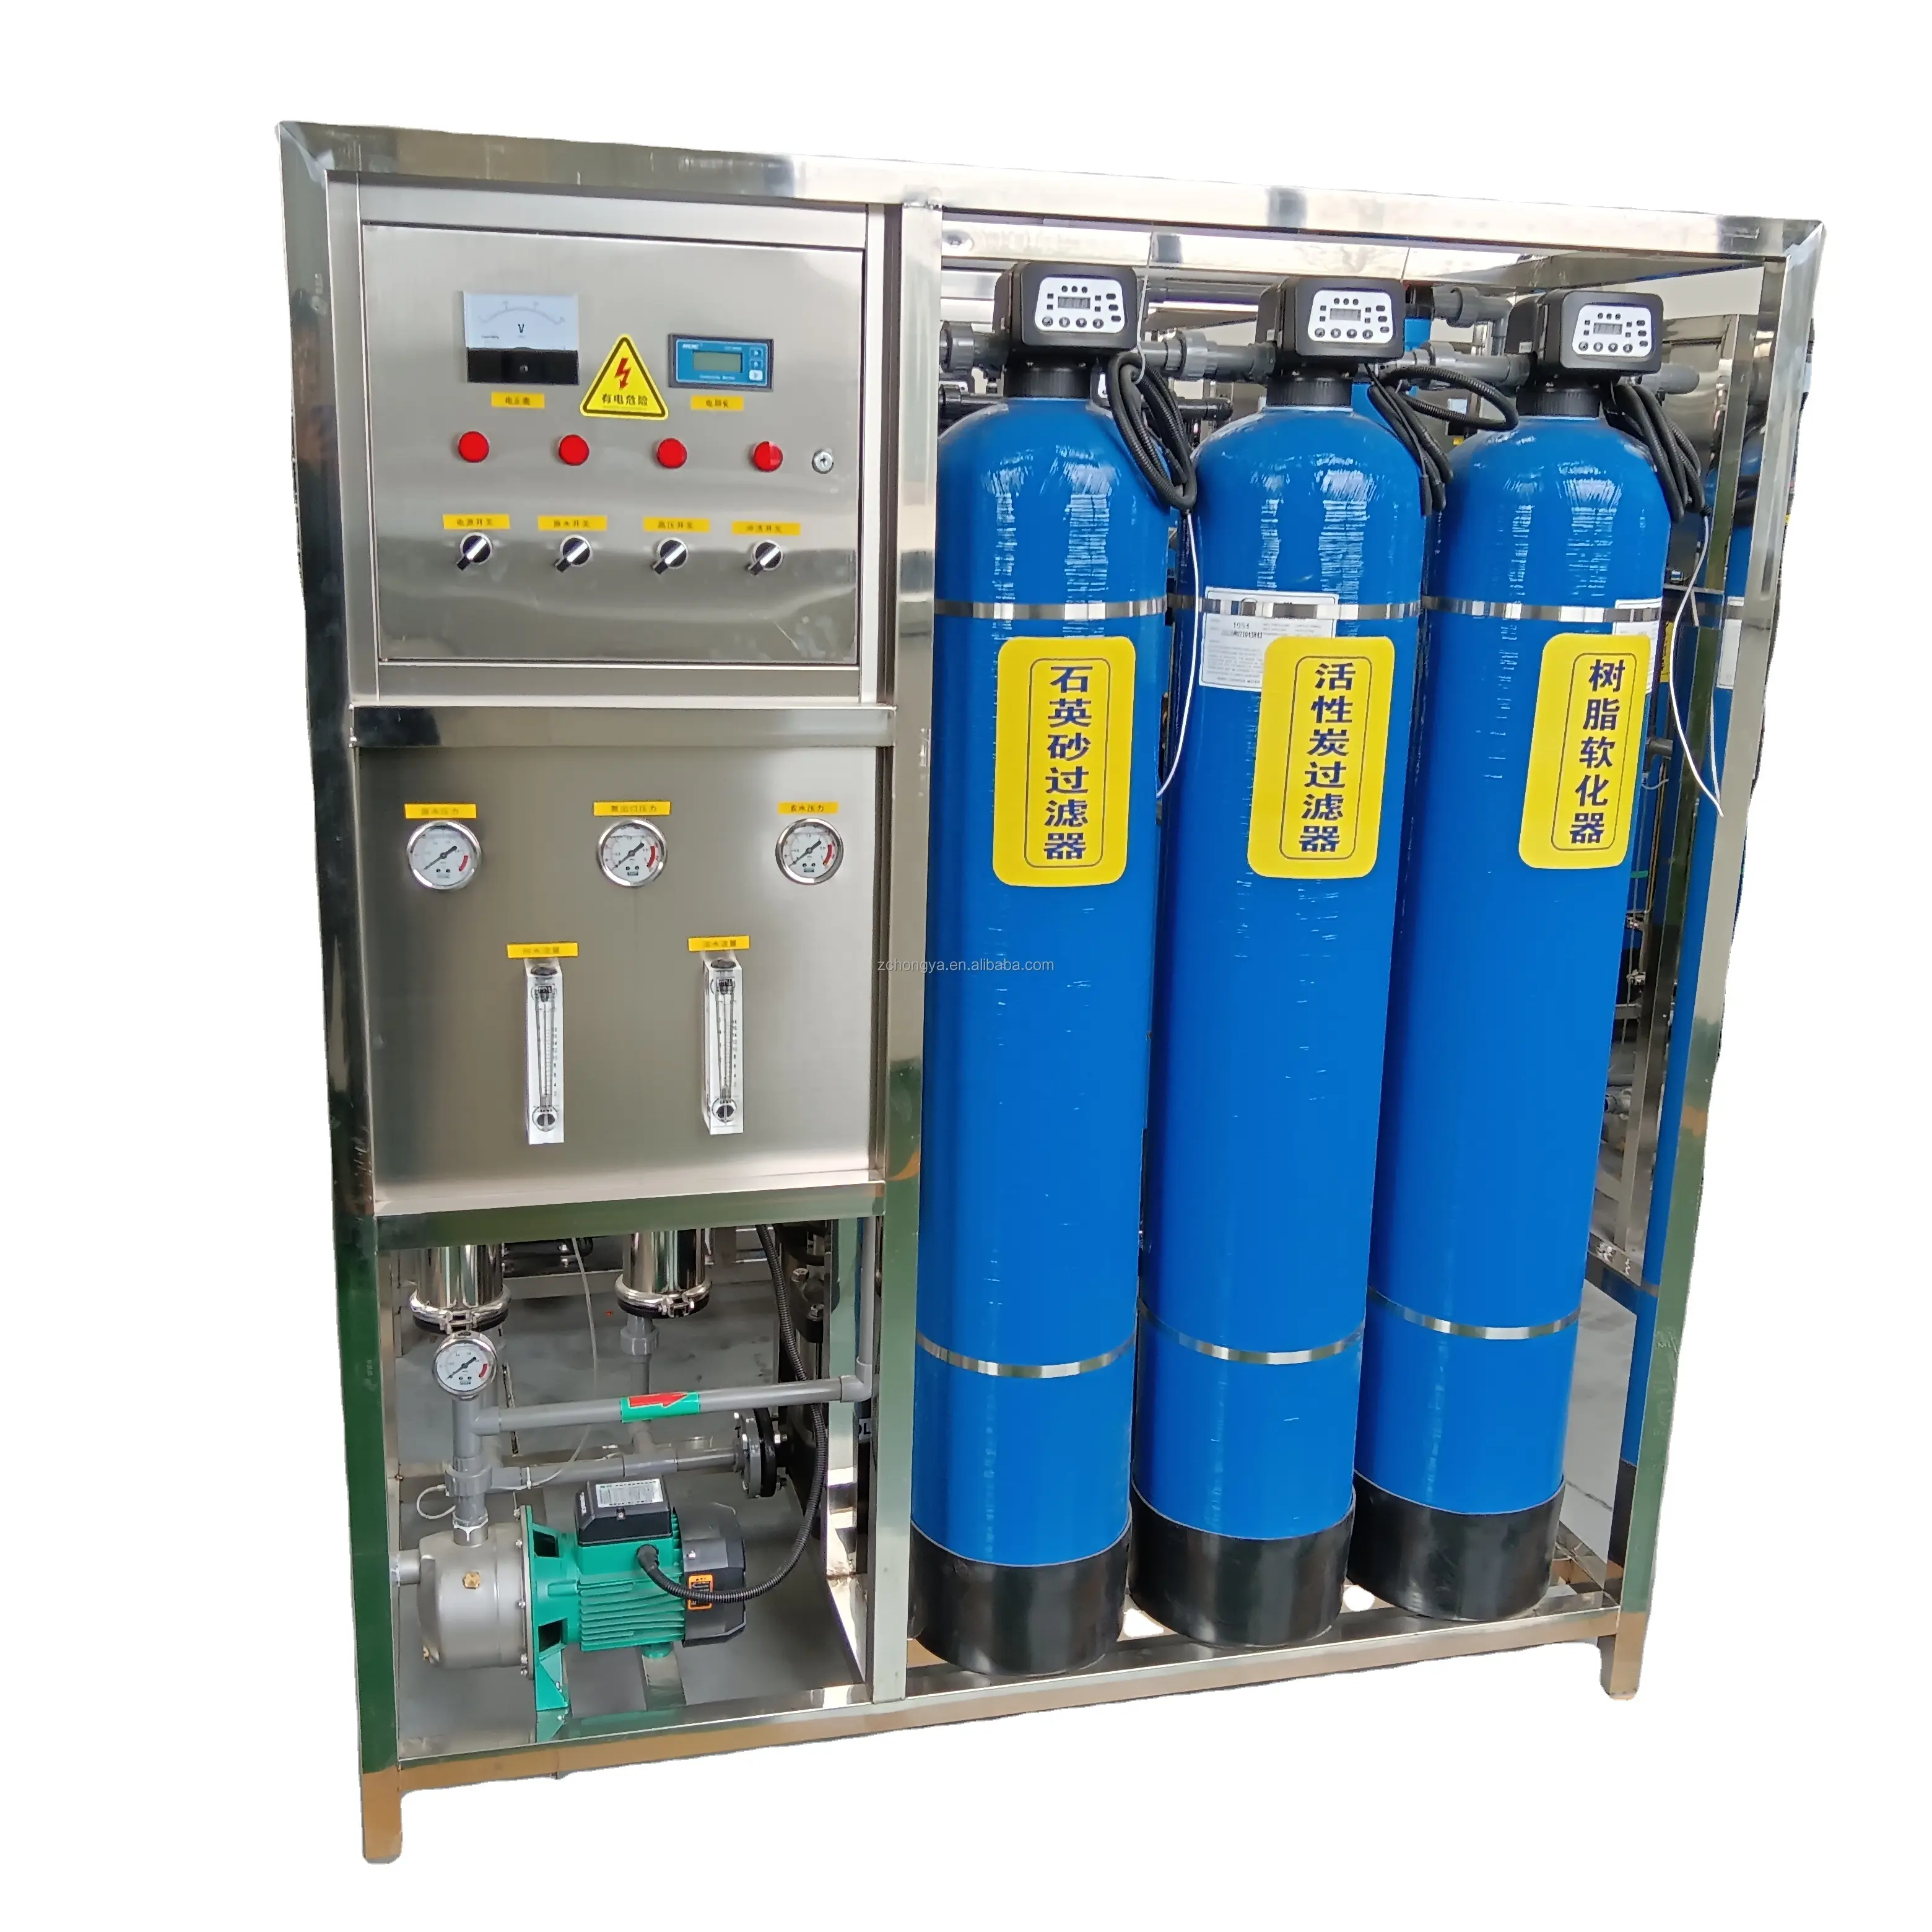 50% Rabatt Wasser filtration anlage Umkehrosmose RO Container wasser filtration anlage